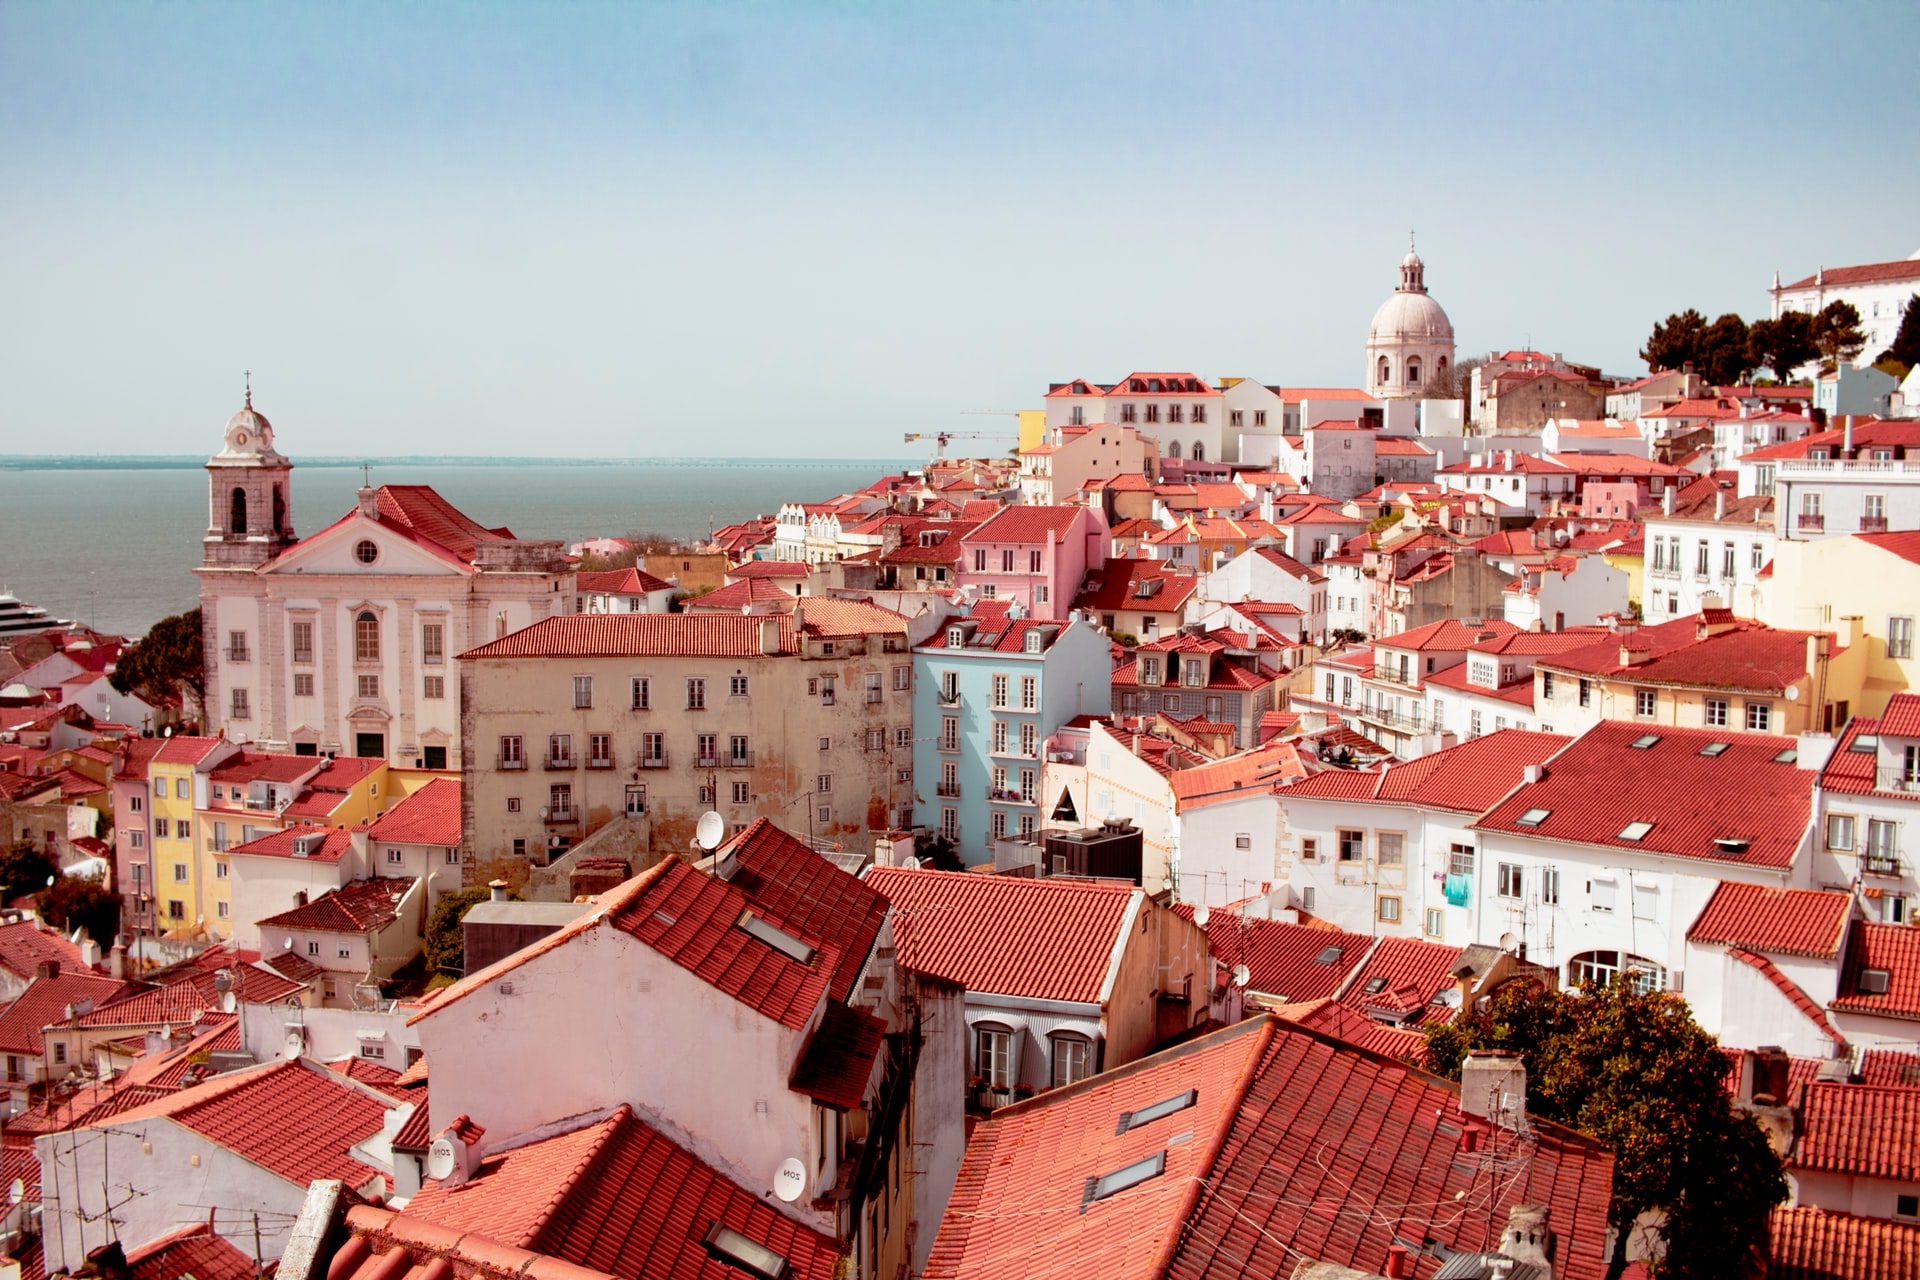 Découvrez nos séjours de luxe en vente privée - Lisbonne. VeryChic vous propose des voyages jusqu’à -70% dans les plus beaux hôtels du monde - Lisbonne